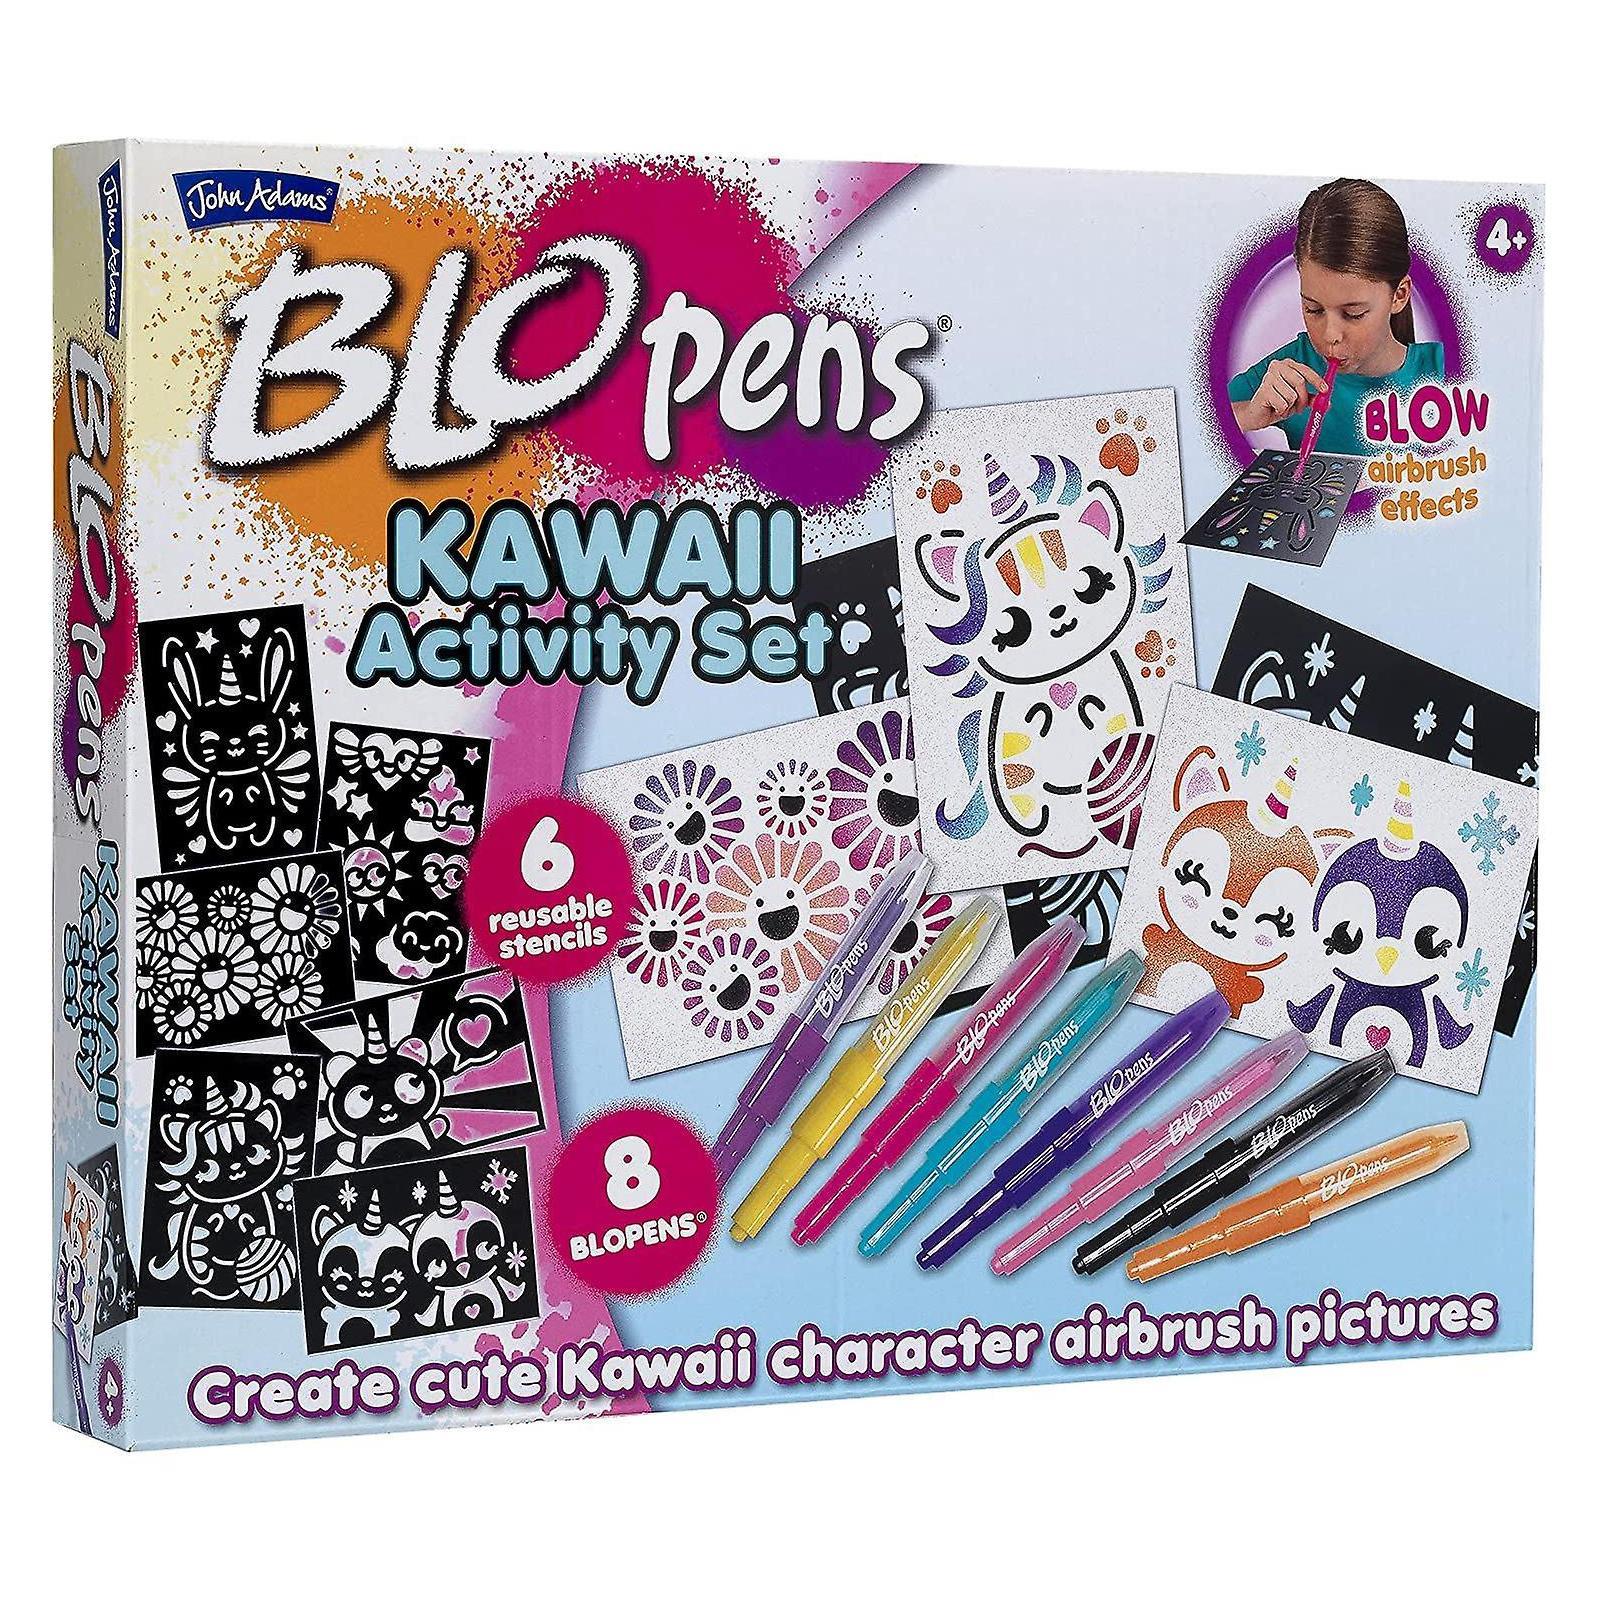 BLOPENS® Kawaii Activity Set